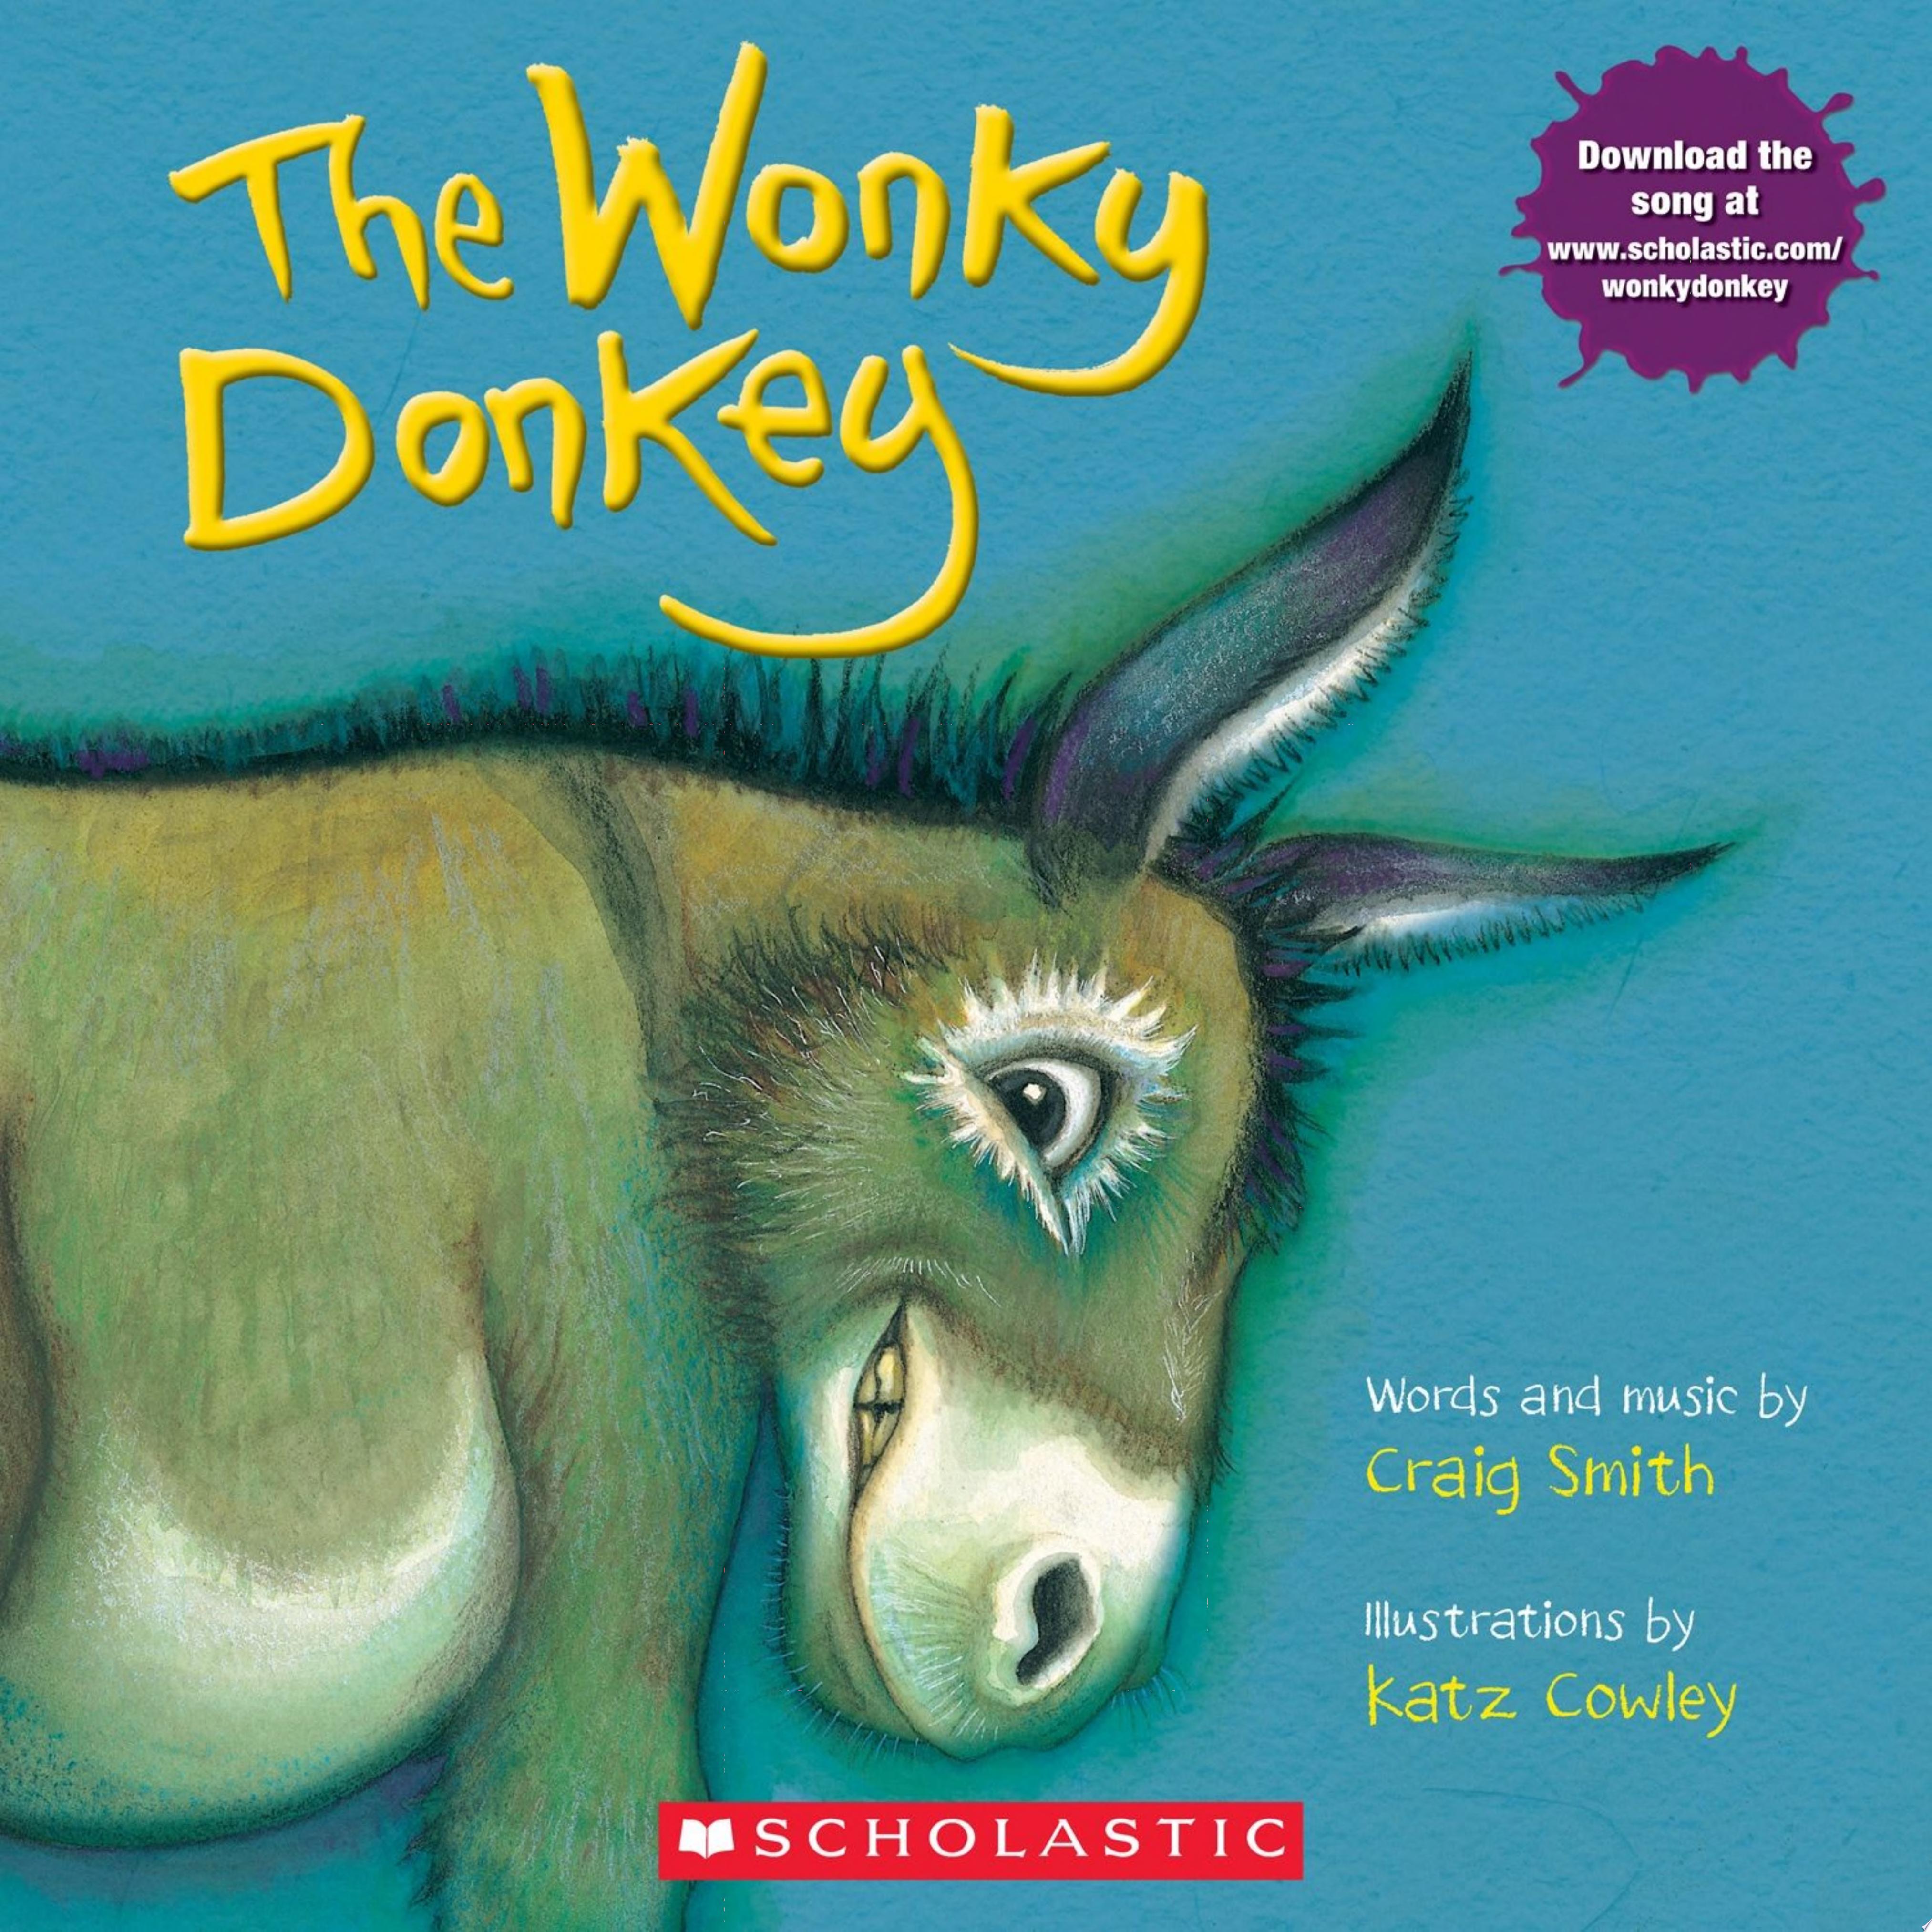 Image for "The Wonky Donkey"